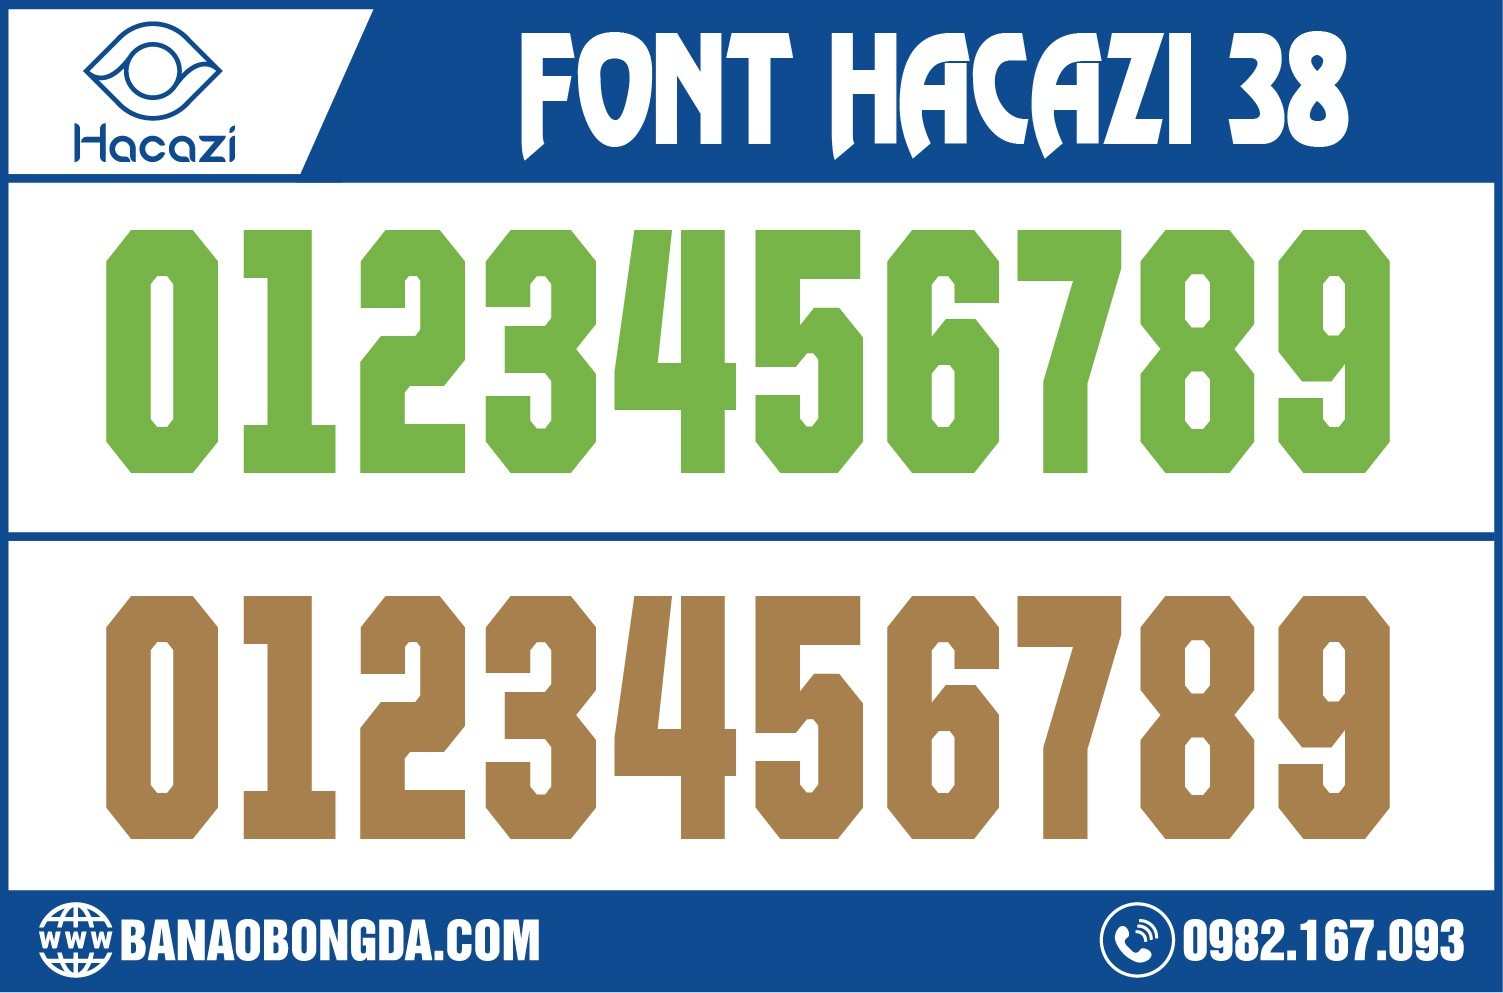 Còn gì tuyệt vời bằng việc được sở hữu cho mình độc quyền bộ font số áo bóng đá 38 tại Hacazi Sport. Cùng kiểu dáng font số mang đến sự sáng rực, thu hút và không kém phần tinh tế khi được đưa lên các mẫu áo đấu. 